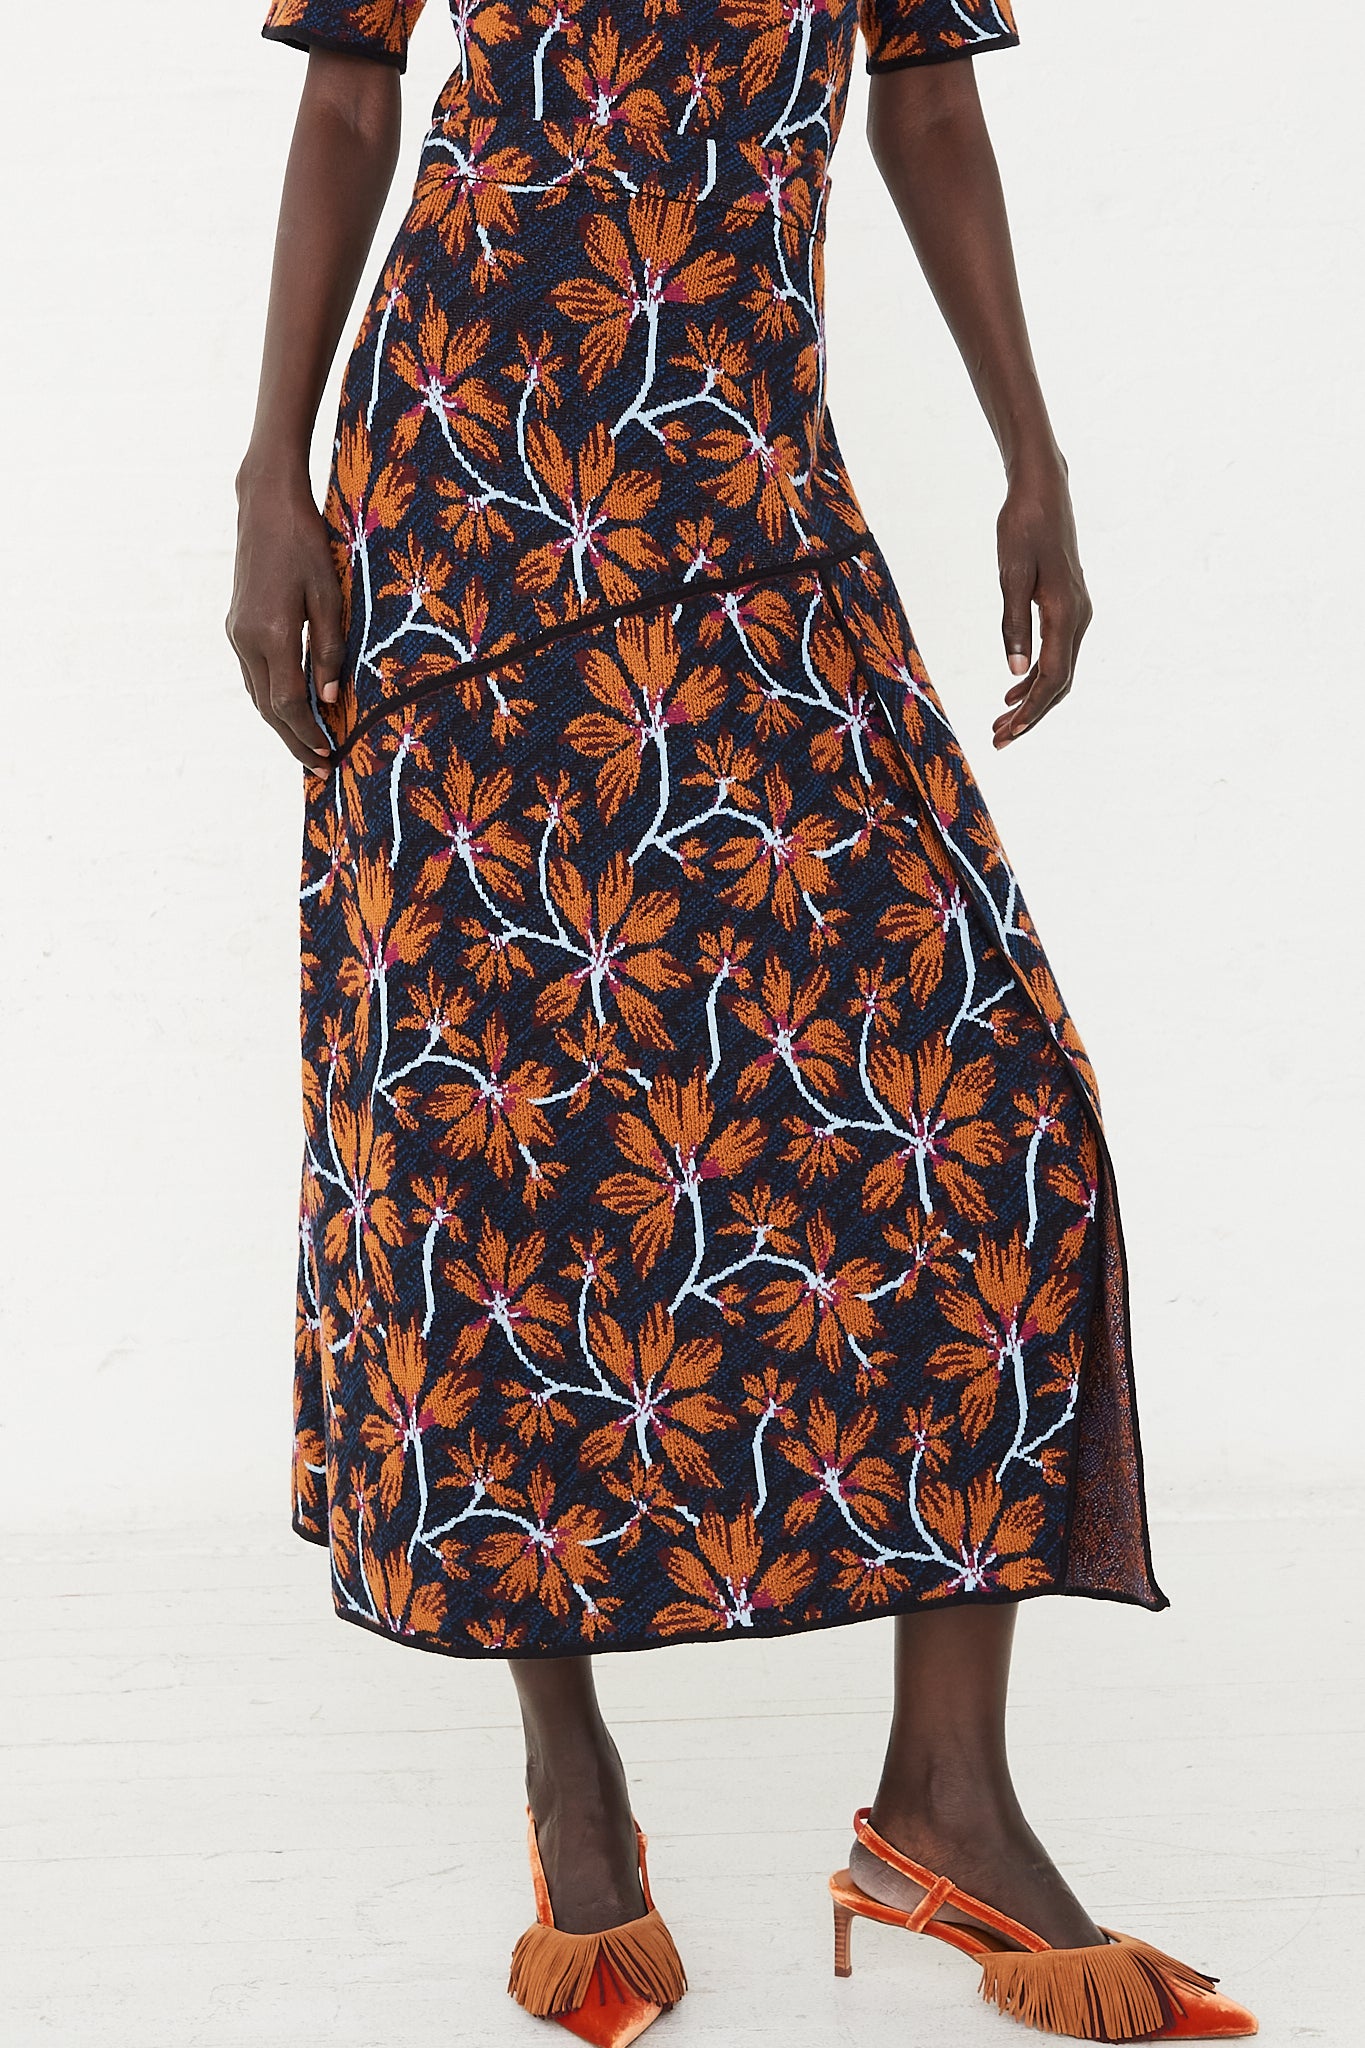 Sabra Knit Skirt in Bellflower by Ulla Johnson for Oroboro Front